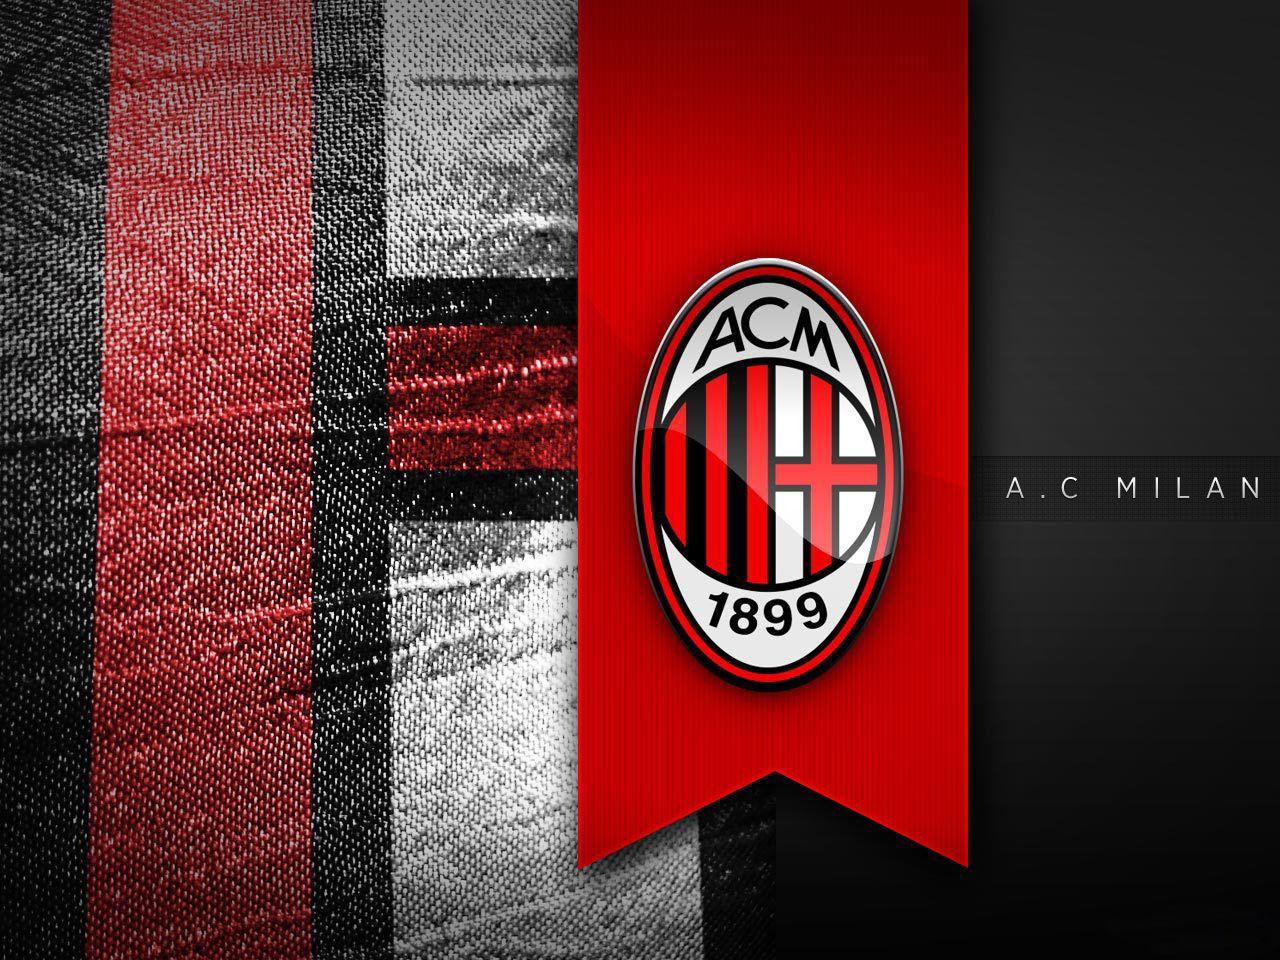 610+ Gambar Keren Logo Ac Milan Gratis